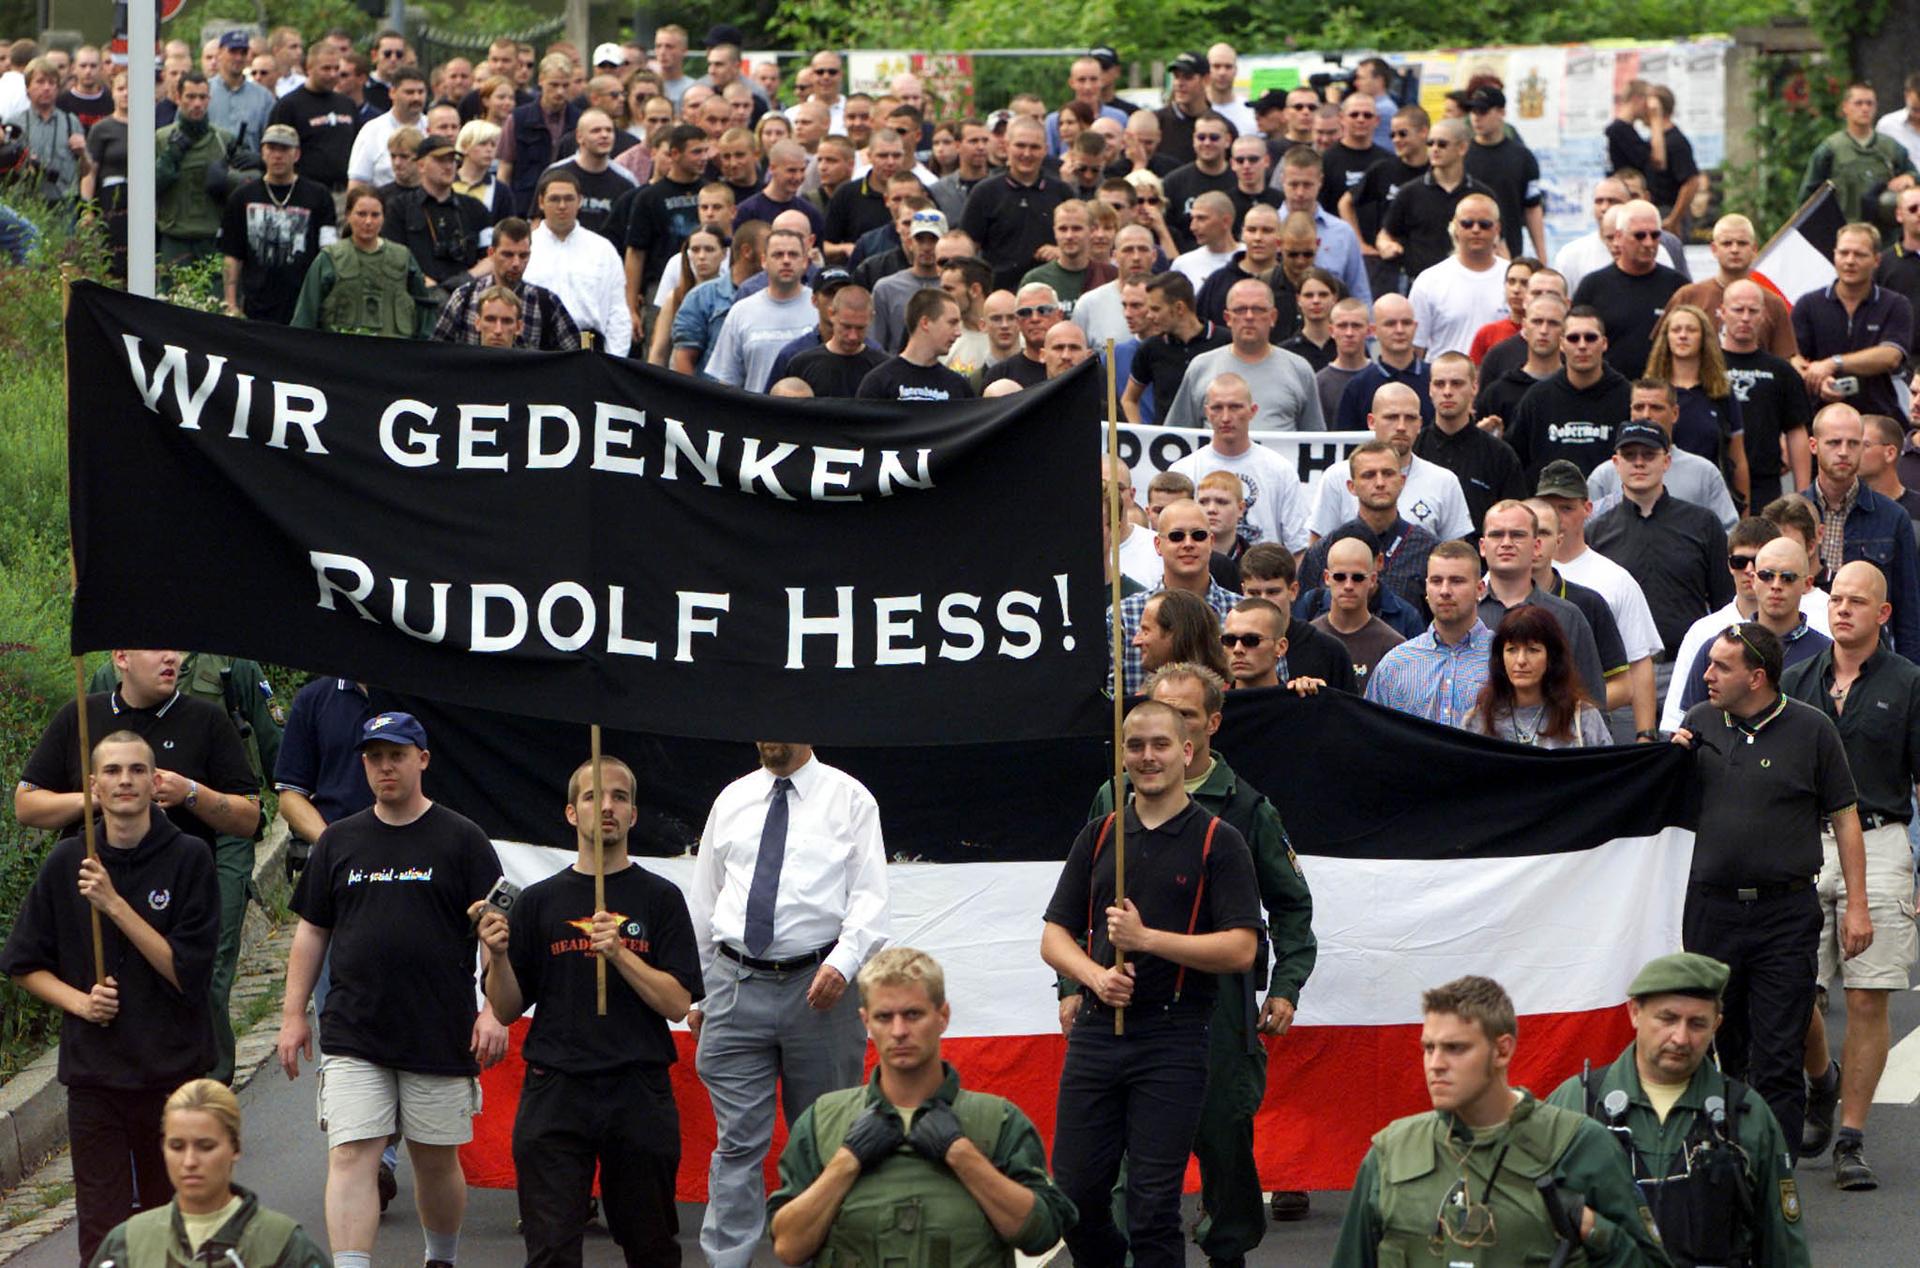 Rudolf Hess march in Wunsiedel